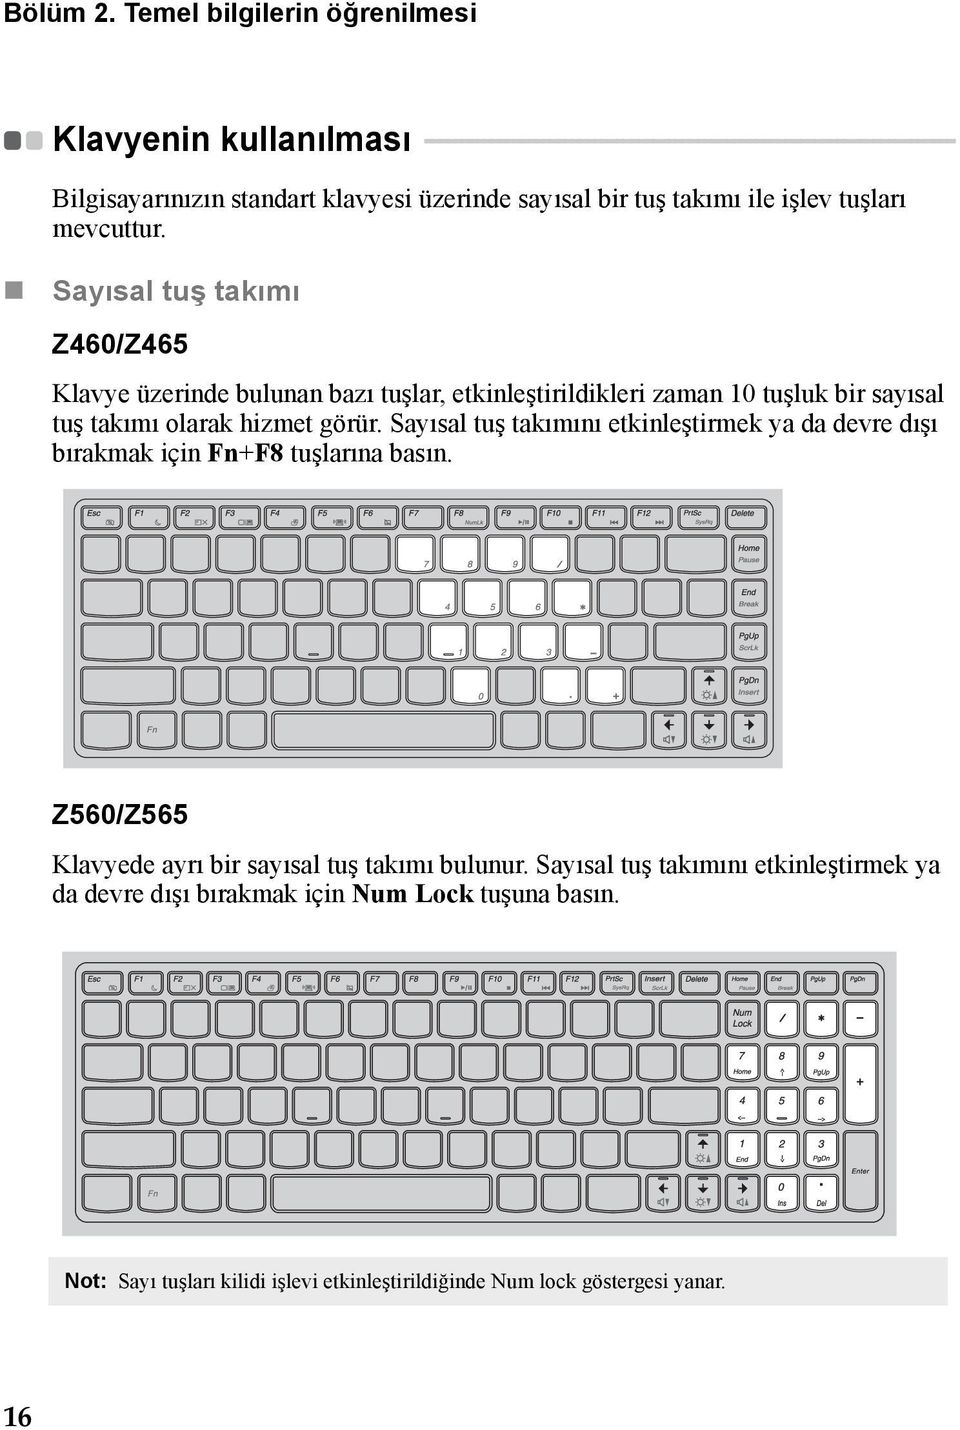 - - Bilgisayarınızın standart klavyesi üzerinde sayısal bir tuş takımı ile işlev tuşları mevcuttur.